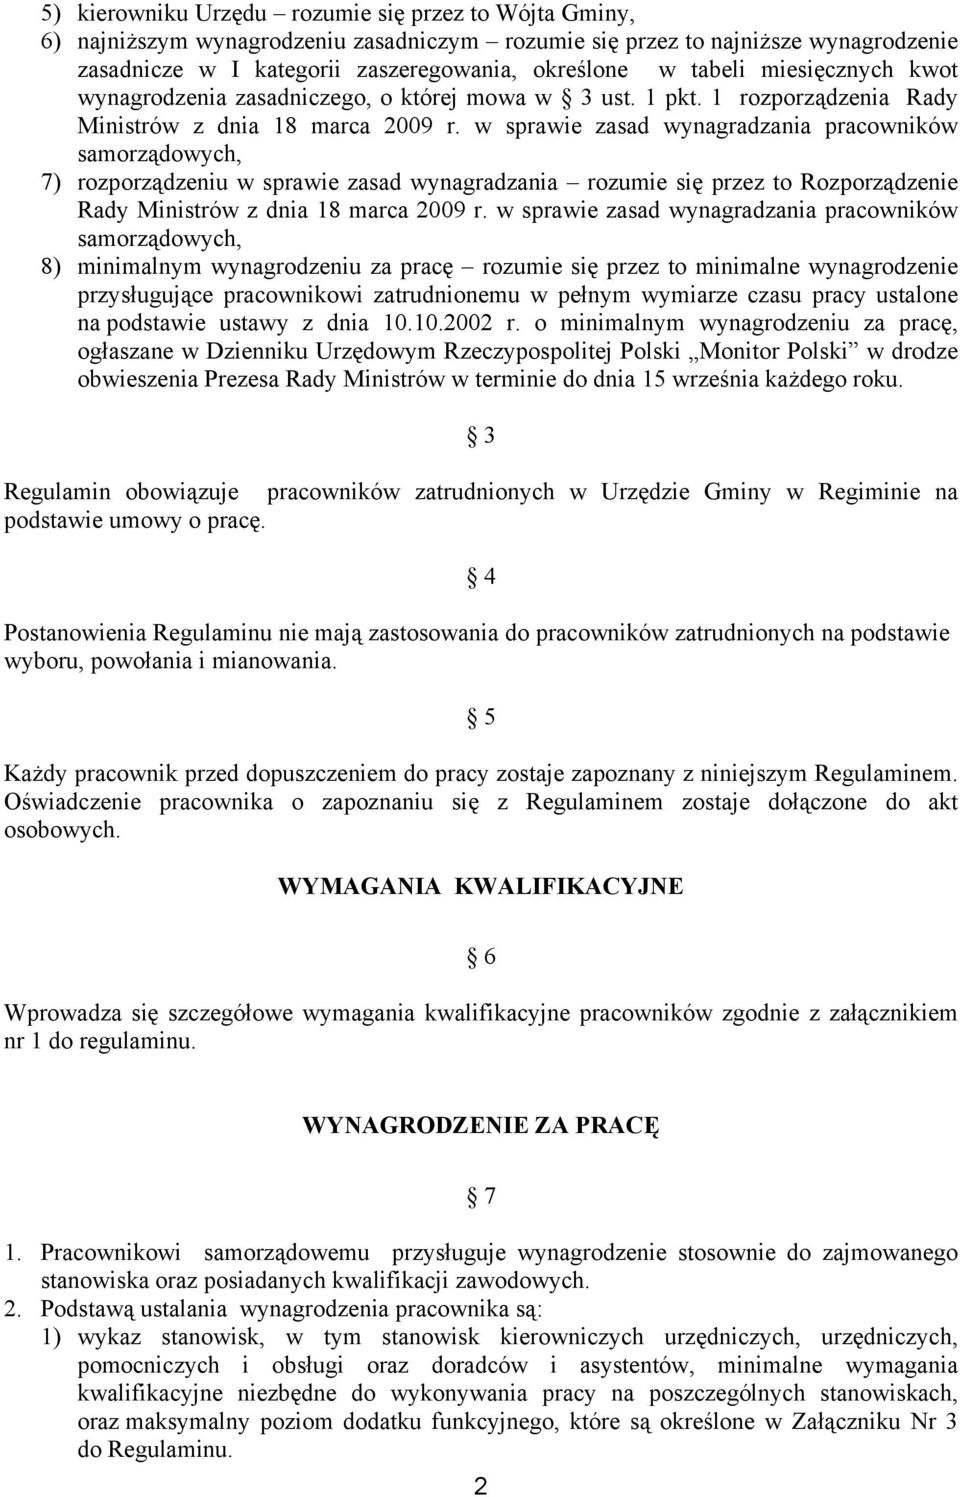 w sprawie zasad wynagradzania pracowników samorządowych, 7) rozporządzeniu w sprawie zasad wynagradzania rozumie się przez to Rozporządzenie Rady Ministrów z dnia 18 marca 2009 r.